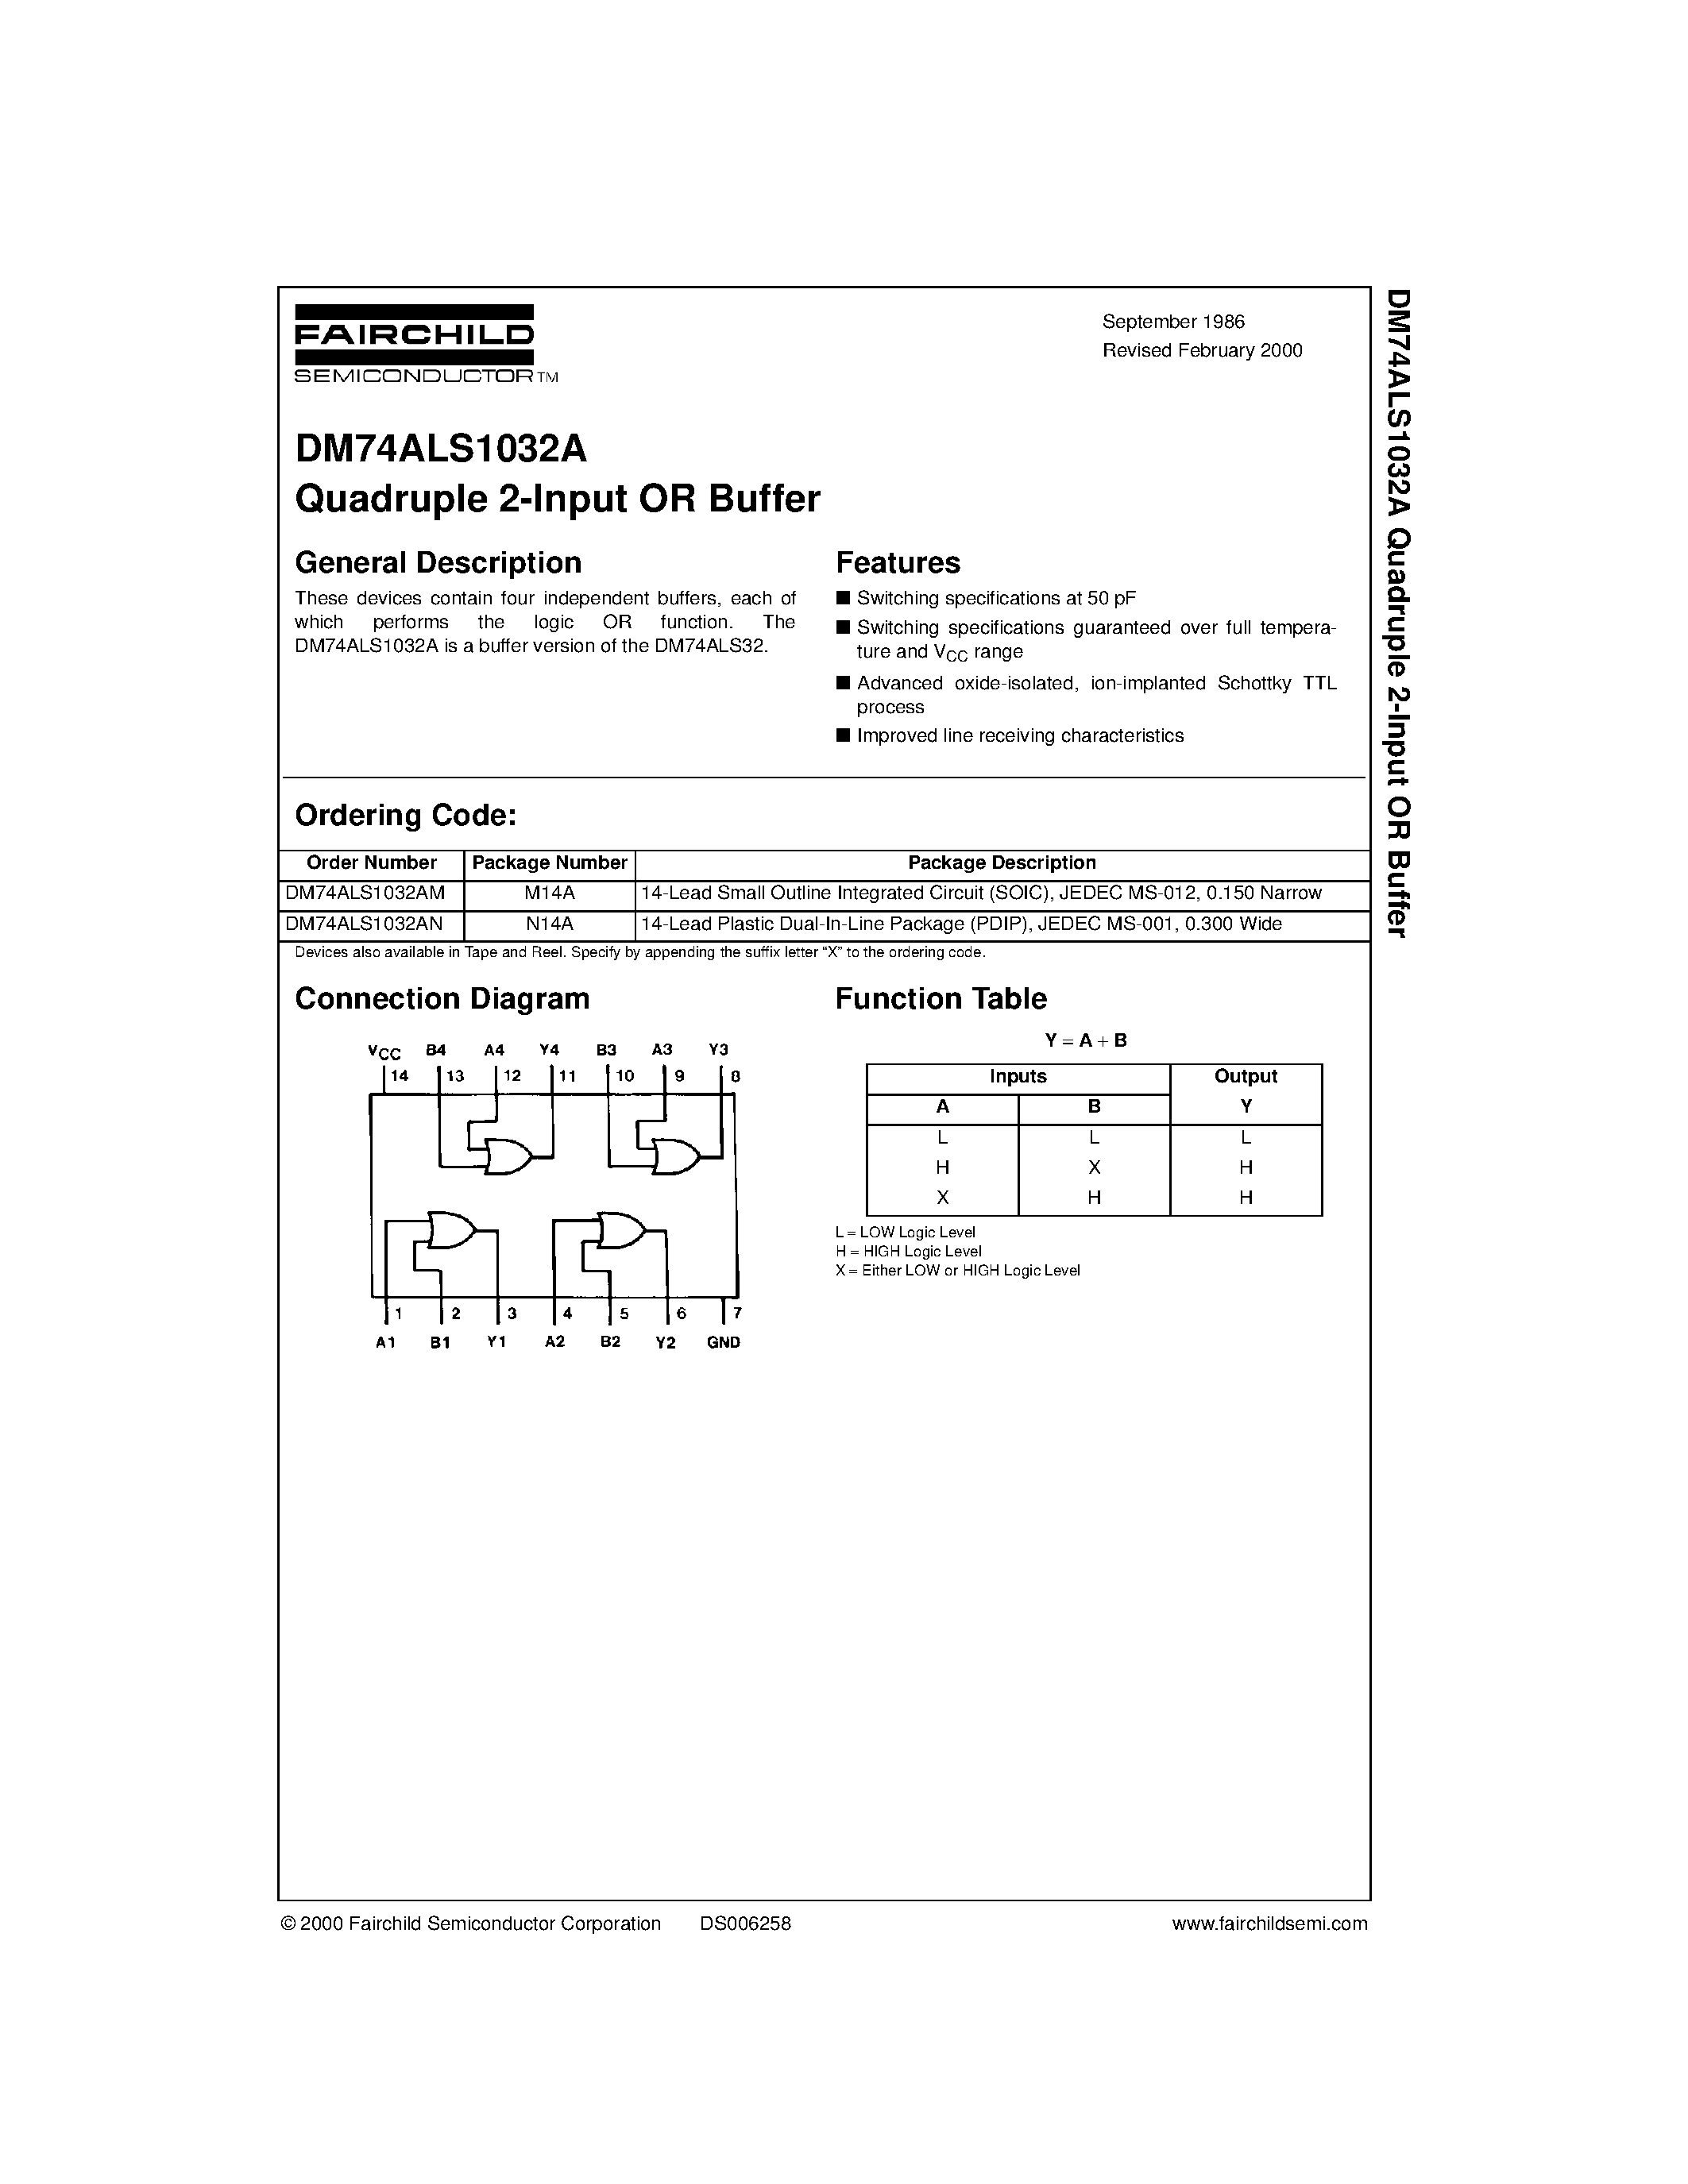 Datasheet DM74ALS1032A - Quadruple 2-Input OR Buffer page 1